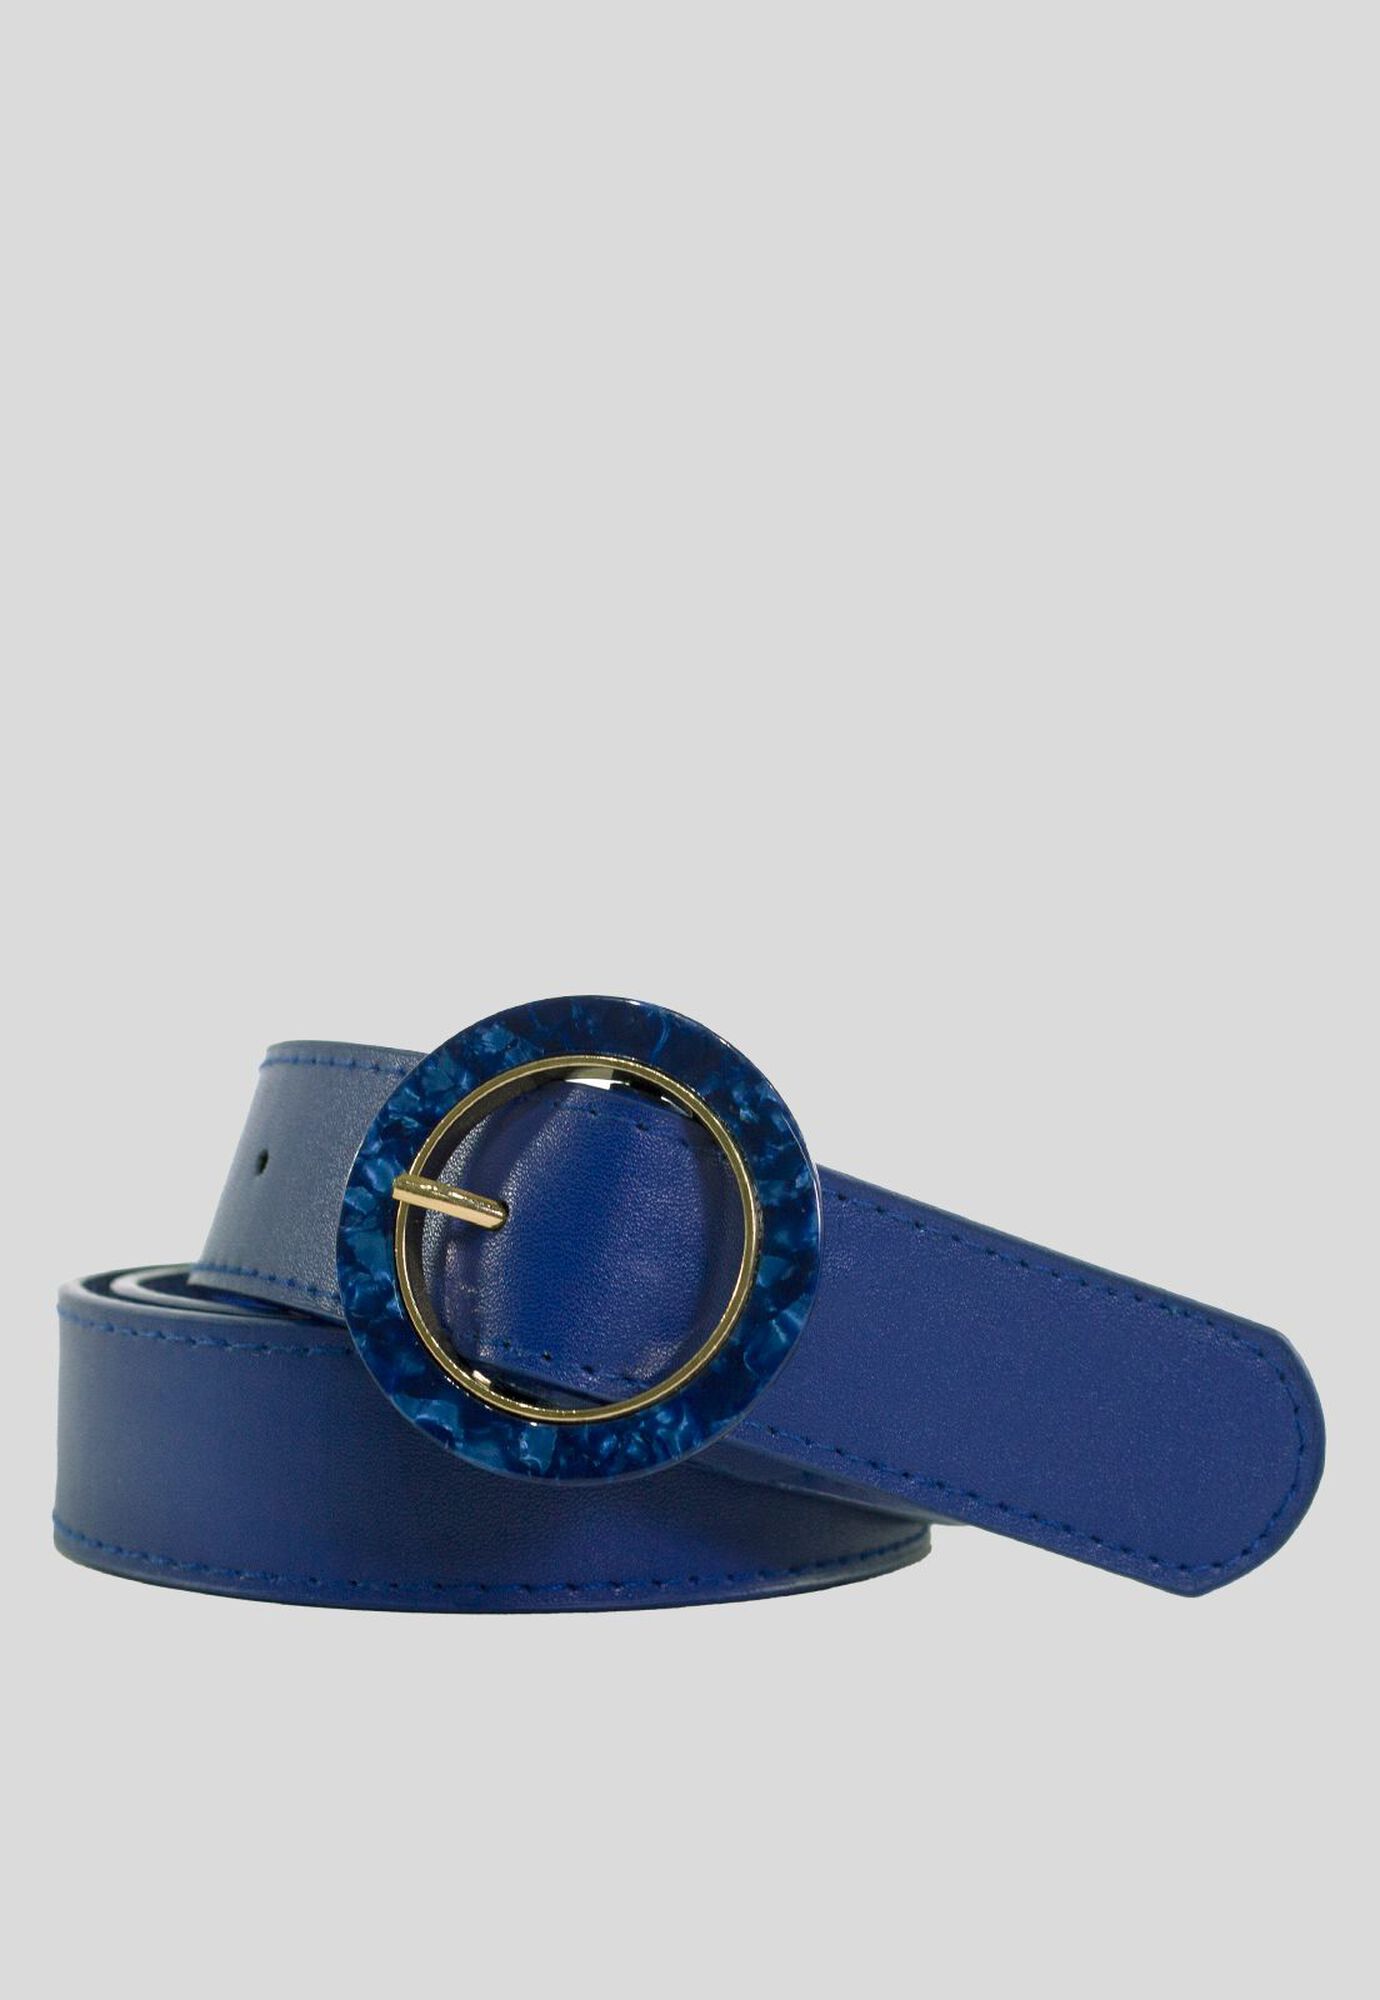 Cinturon Hebilla Redondo Azul | Paris.cl